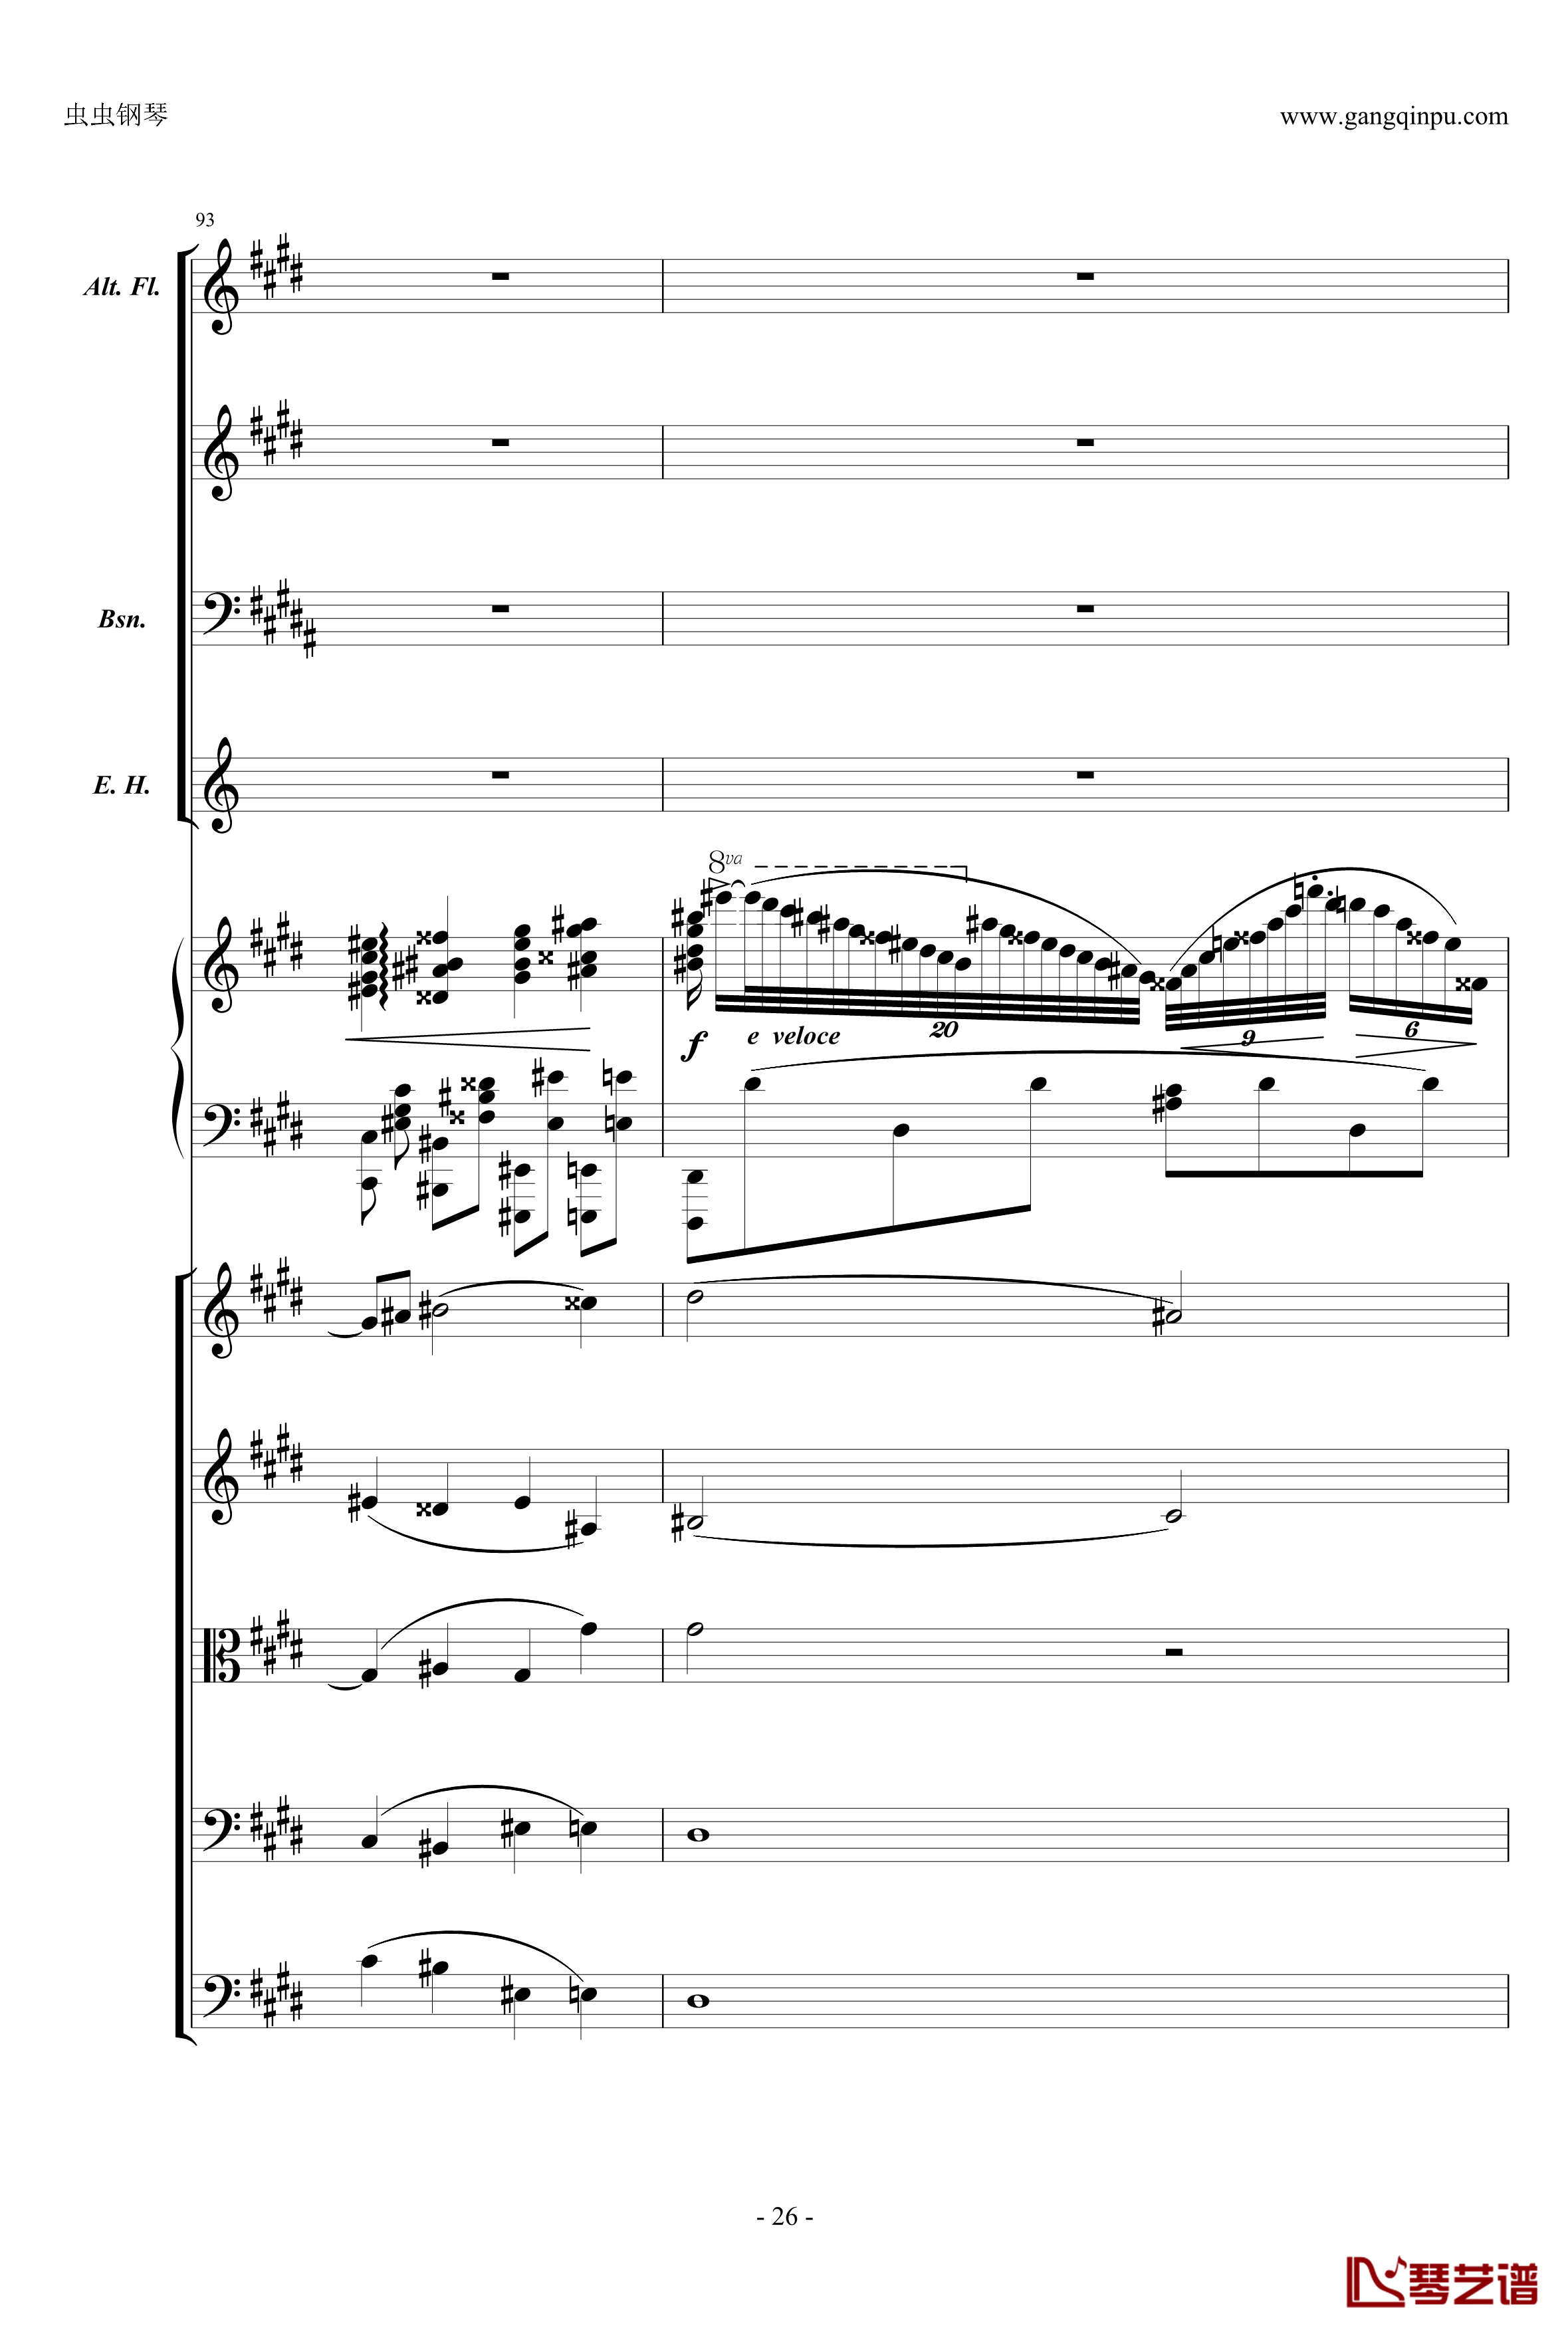 萧邦第一钢琴协奏曲第二乐章钢琴谱-肖邦-chopin26